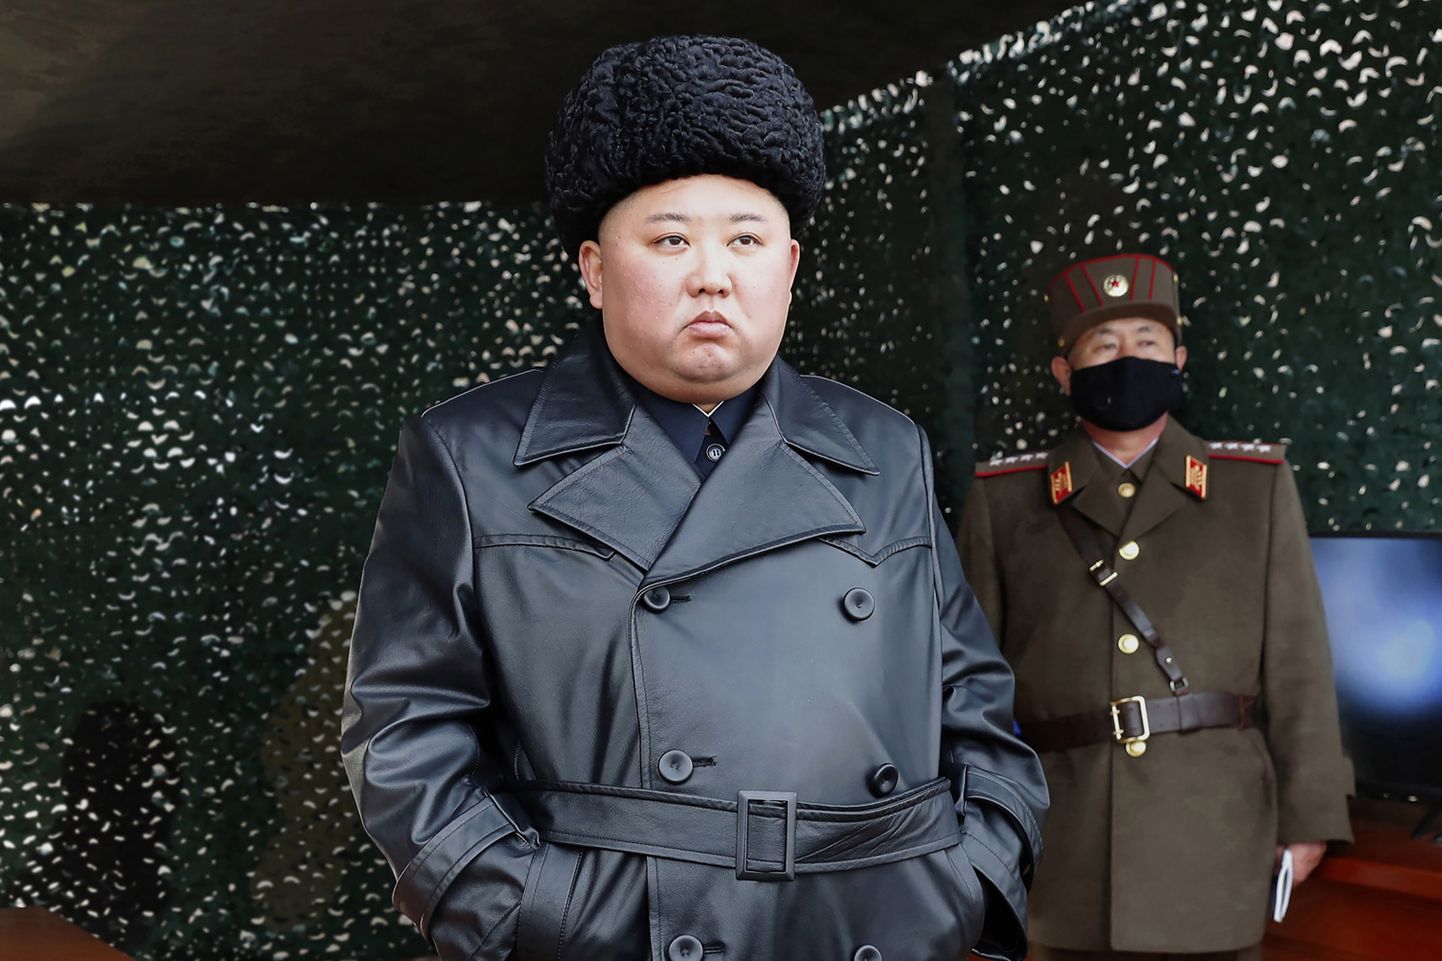 Põhja-Korea liider Kim Jong-un jälgimas raketiktasetust koos kindraliga, kes kannab kaitsemaski